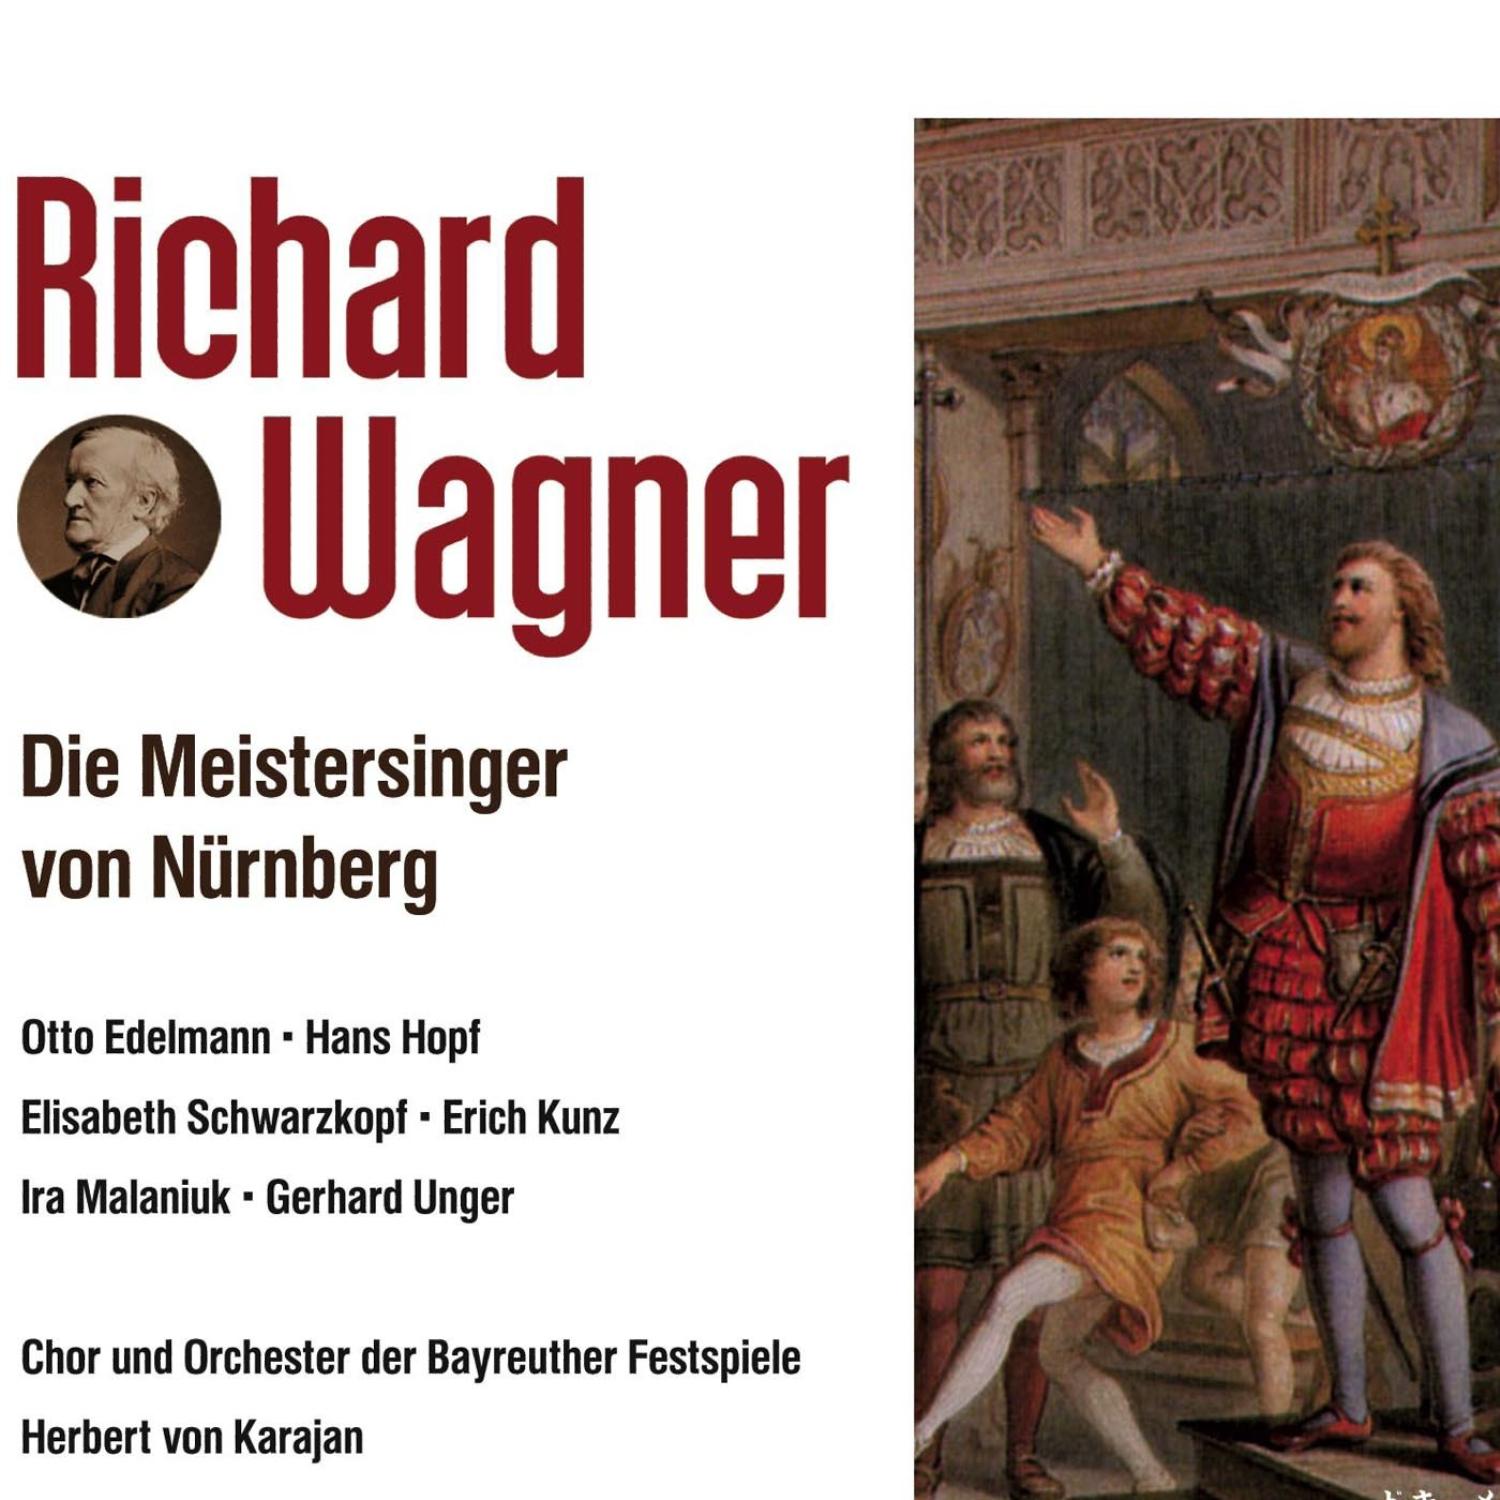 Die Meistersinger von Nü rnberg1 Aufzug: Vorspiel  prelude